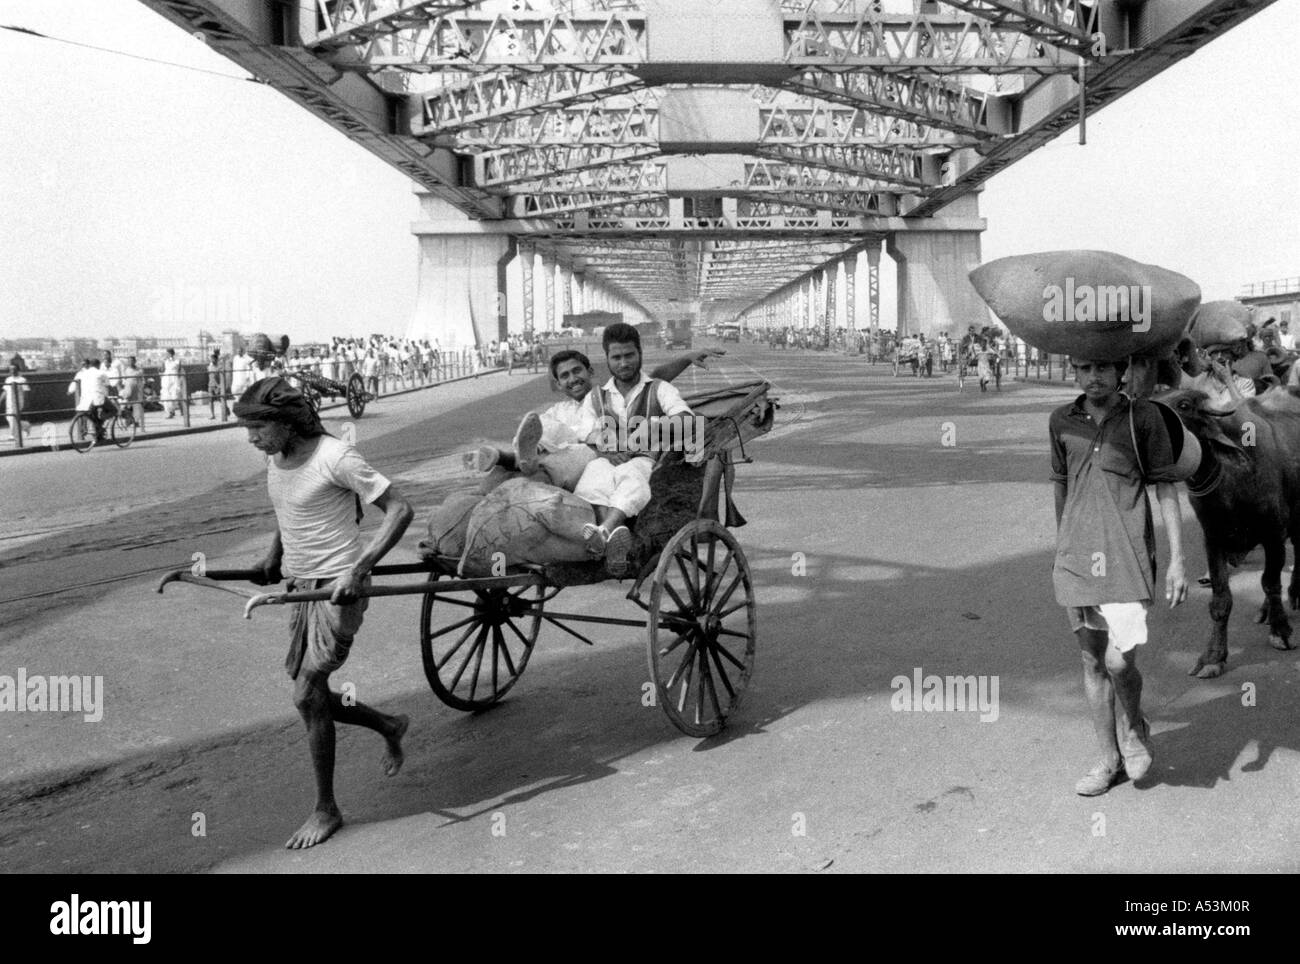 Painet ha1342 142 noir et blanc passage de pousse-pousse transport howrah bridge Calcutta Inde au pays en développement, pays Banque D'Images